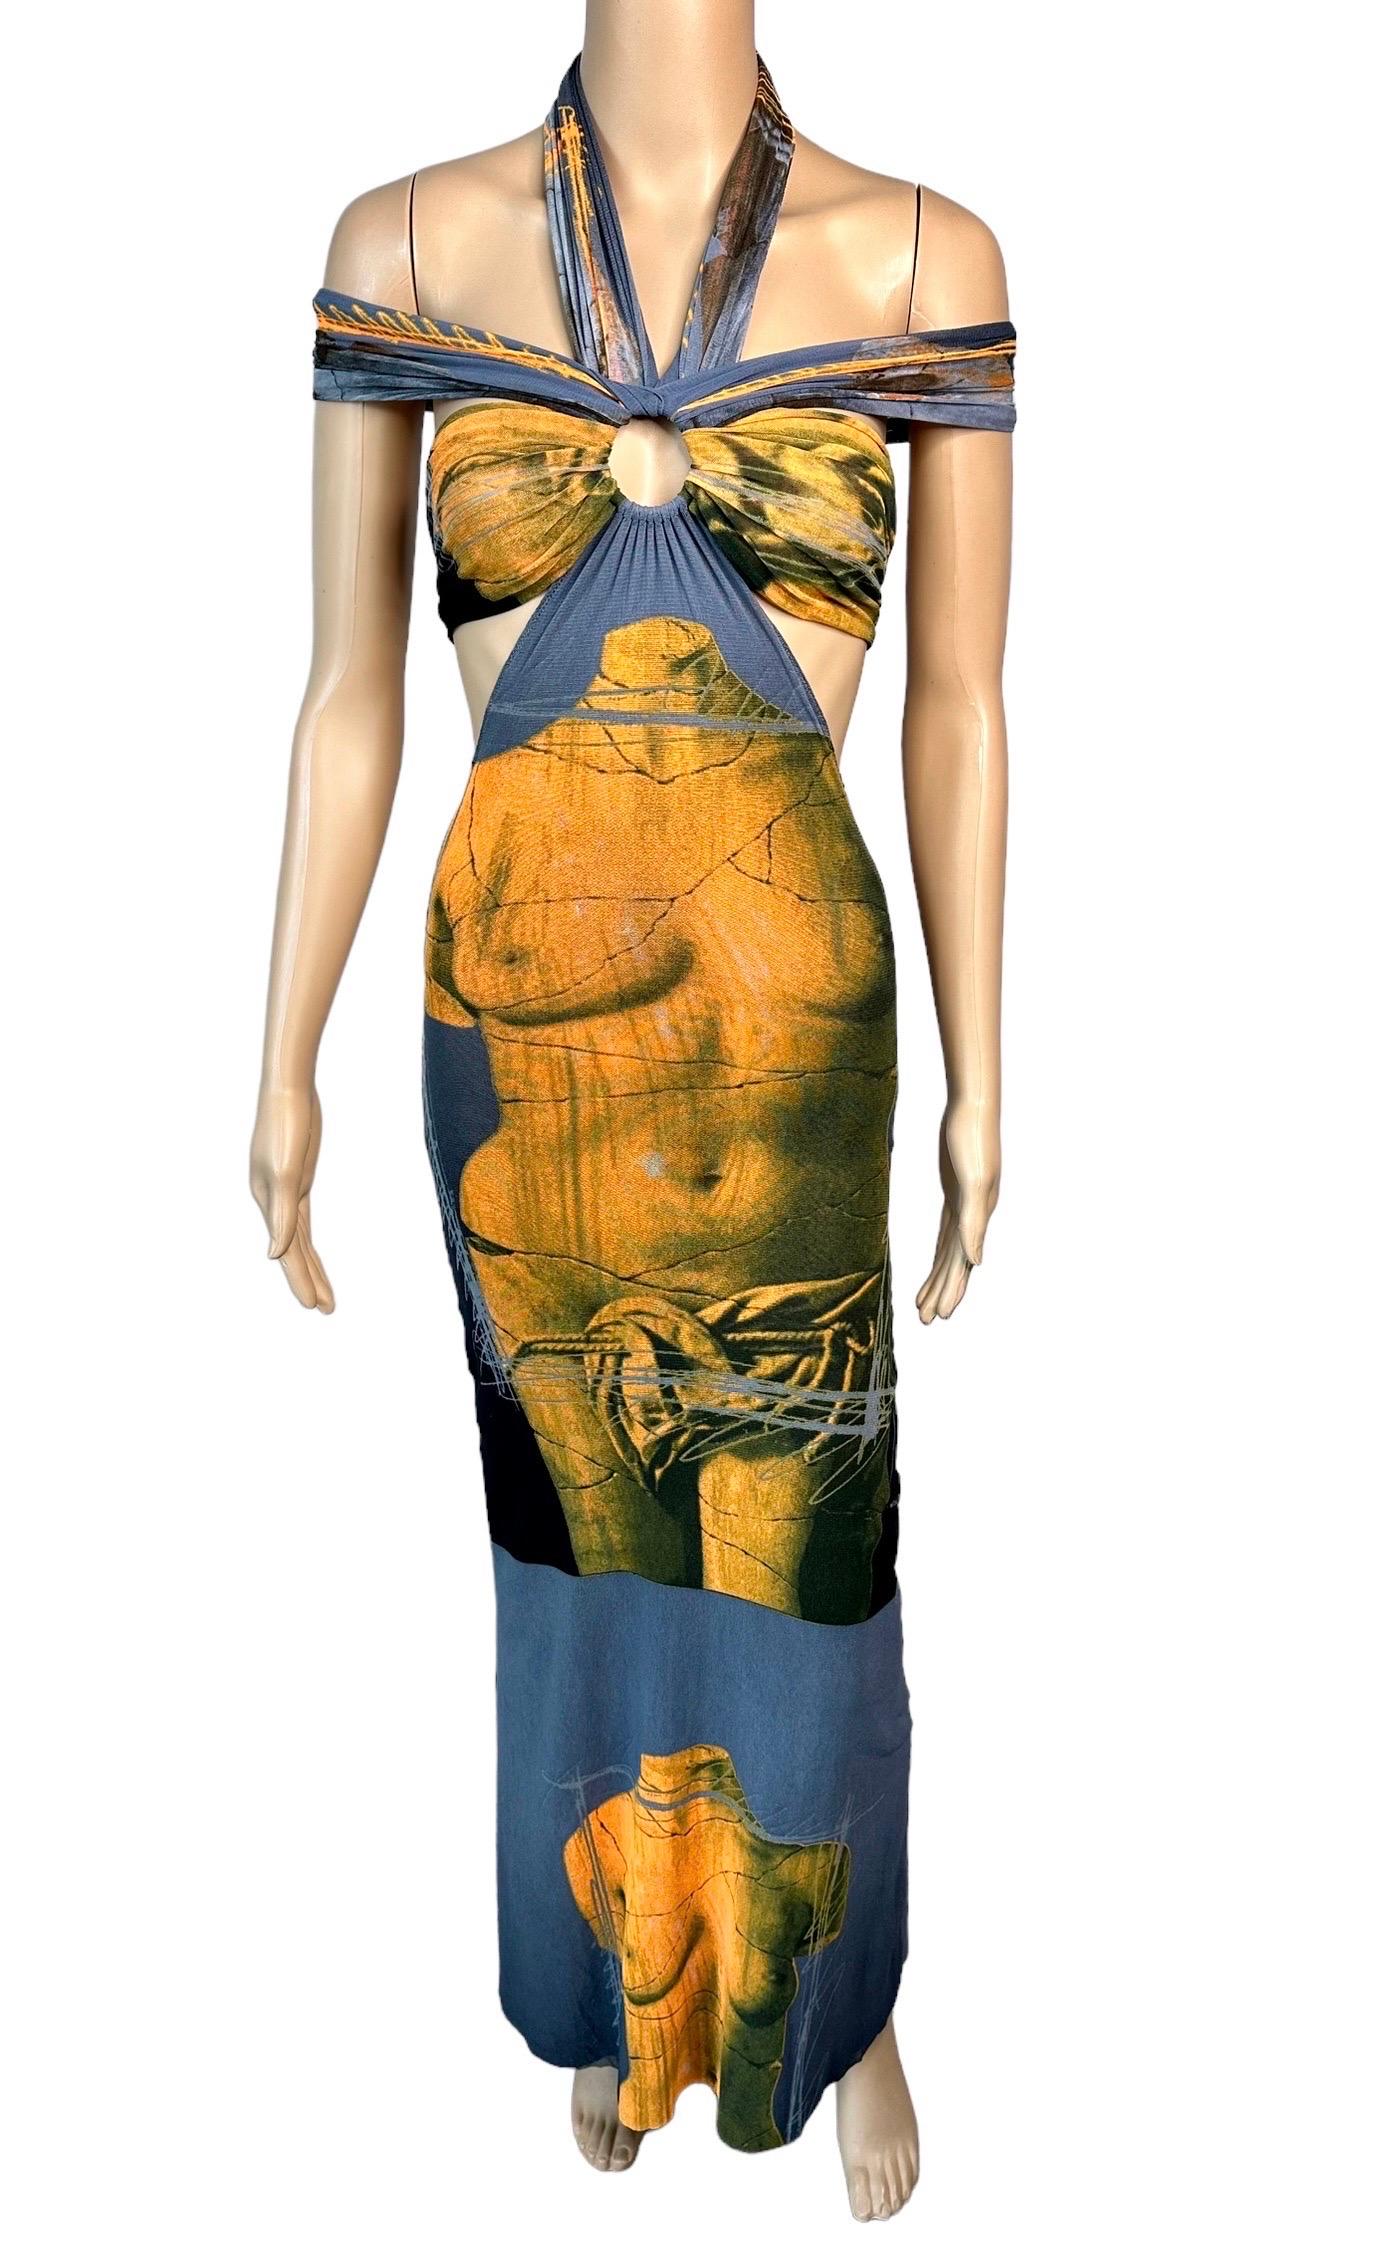 Jean Paul Gaultier Soleil S/S 1999 Vintage Venus De Milo Cutout Mesh Sheer Dress 3